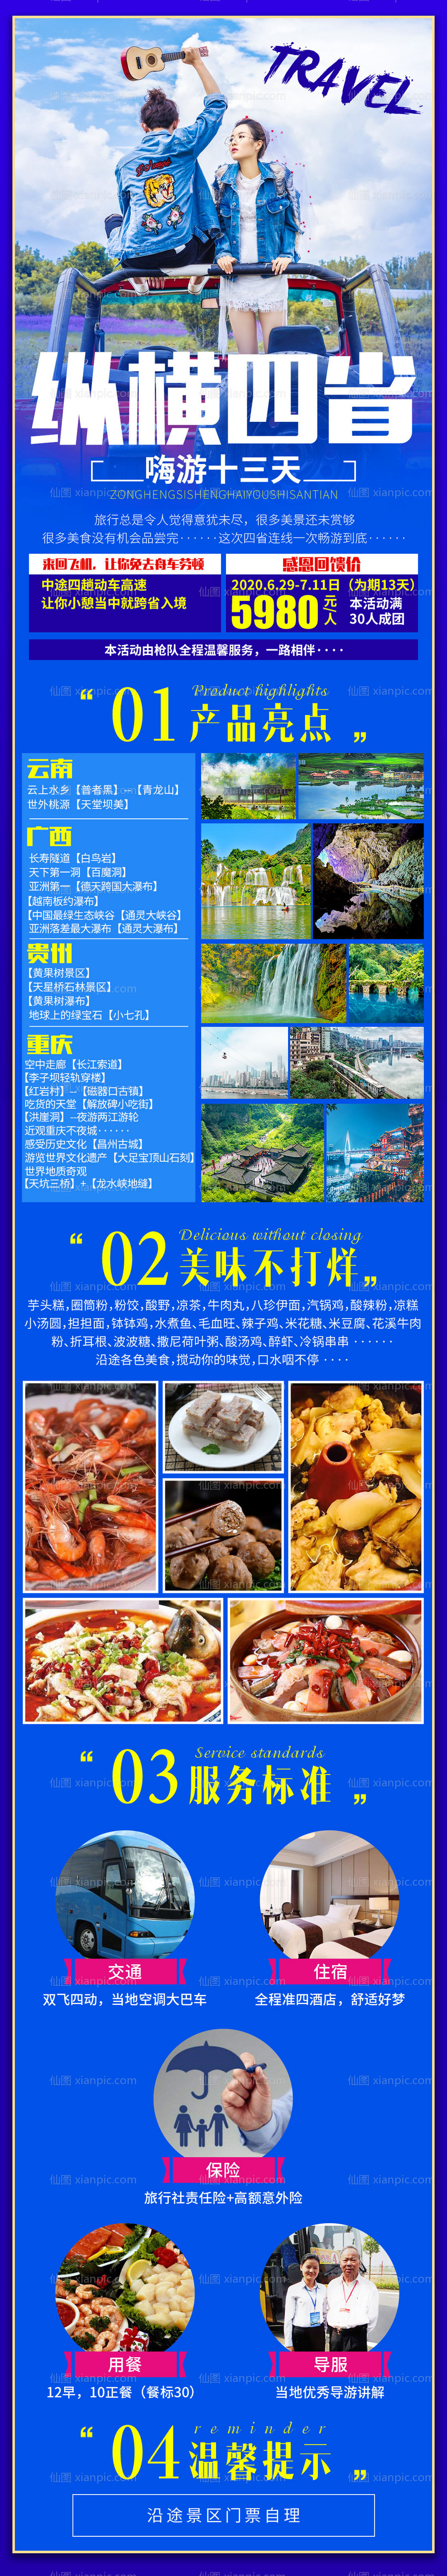 素材乐-纵横四省云南广西贵州重庆长图旅游海报